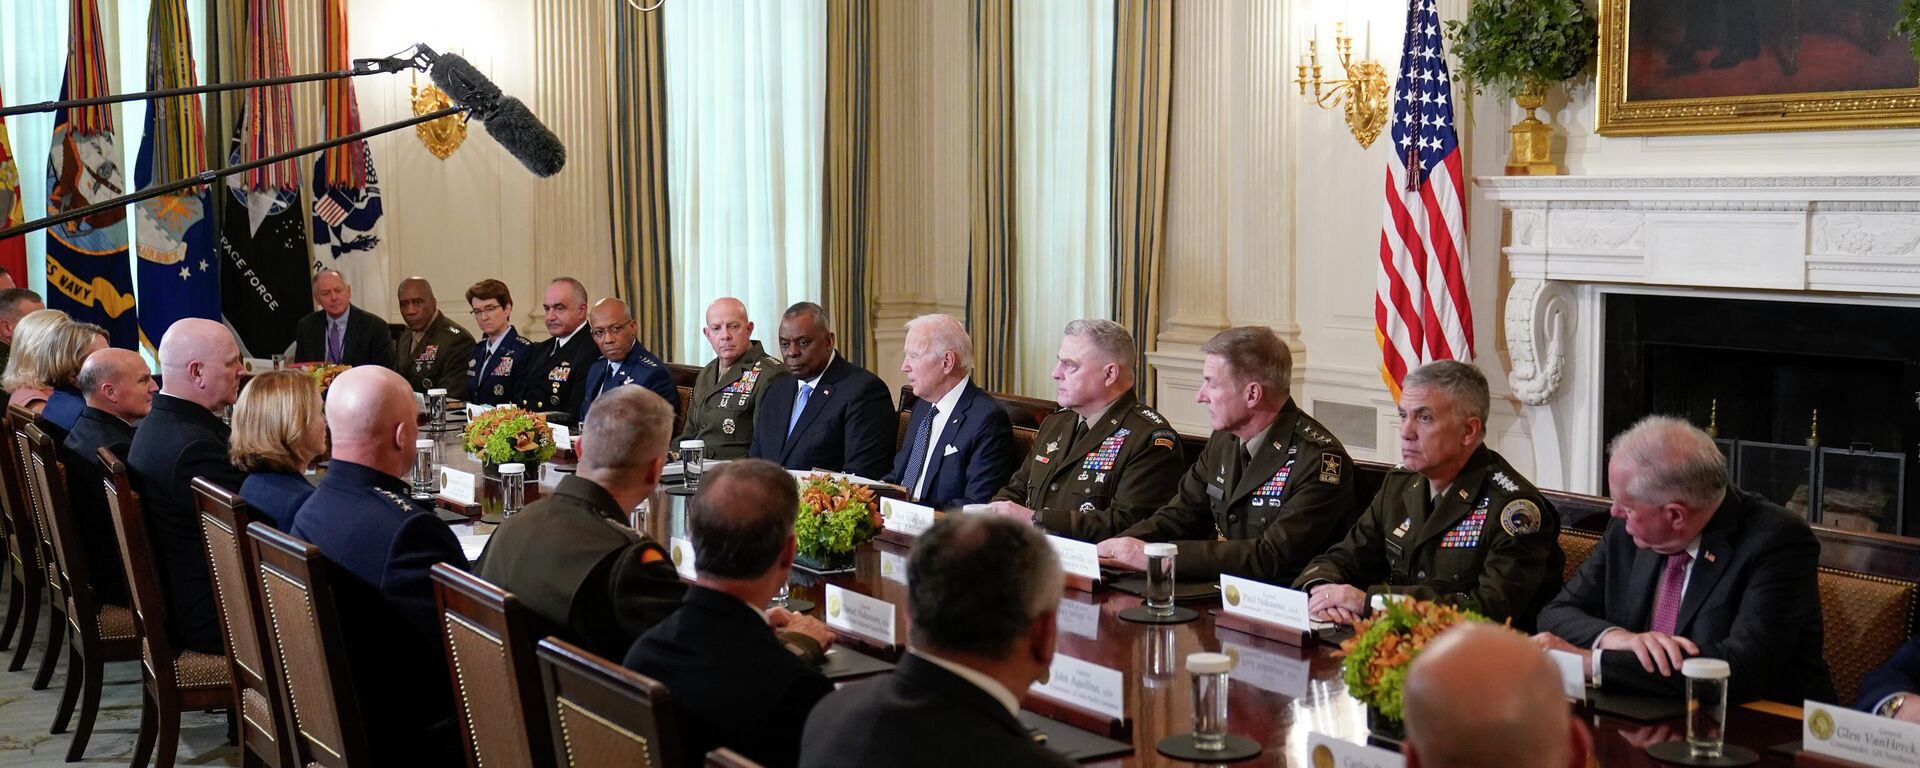 O presidente Joe Biden se reúne com líderes militares no State Dining Room da Casa Branca em Washington, 26 de outubro de 2022 - Sputnik Brasil, 1920, 26.10.2022